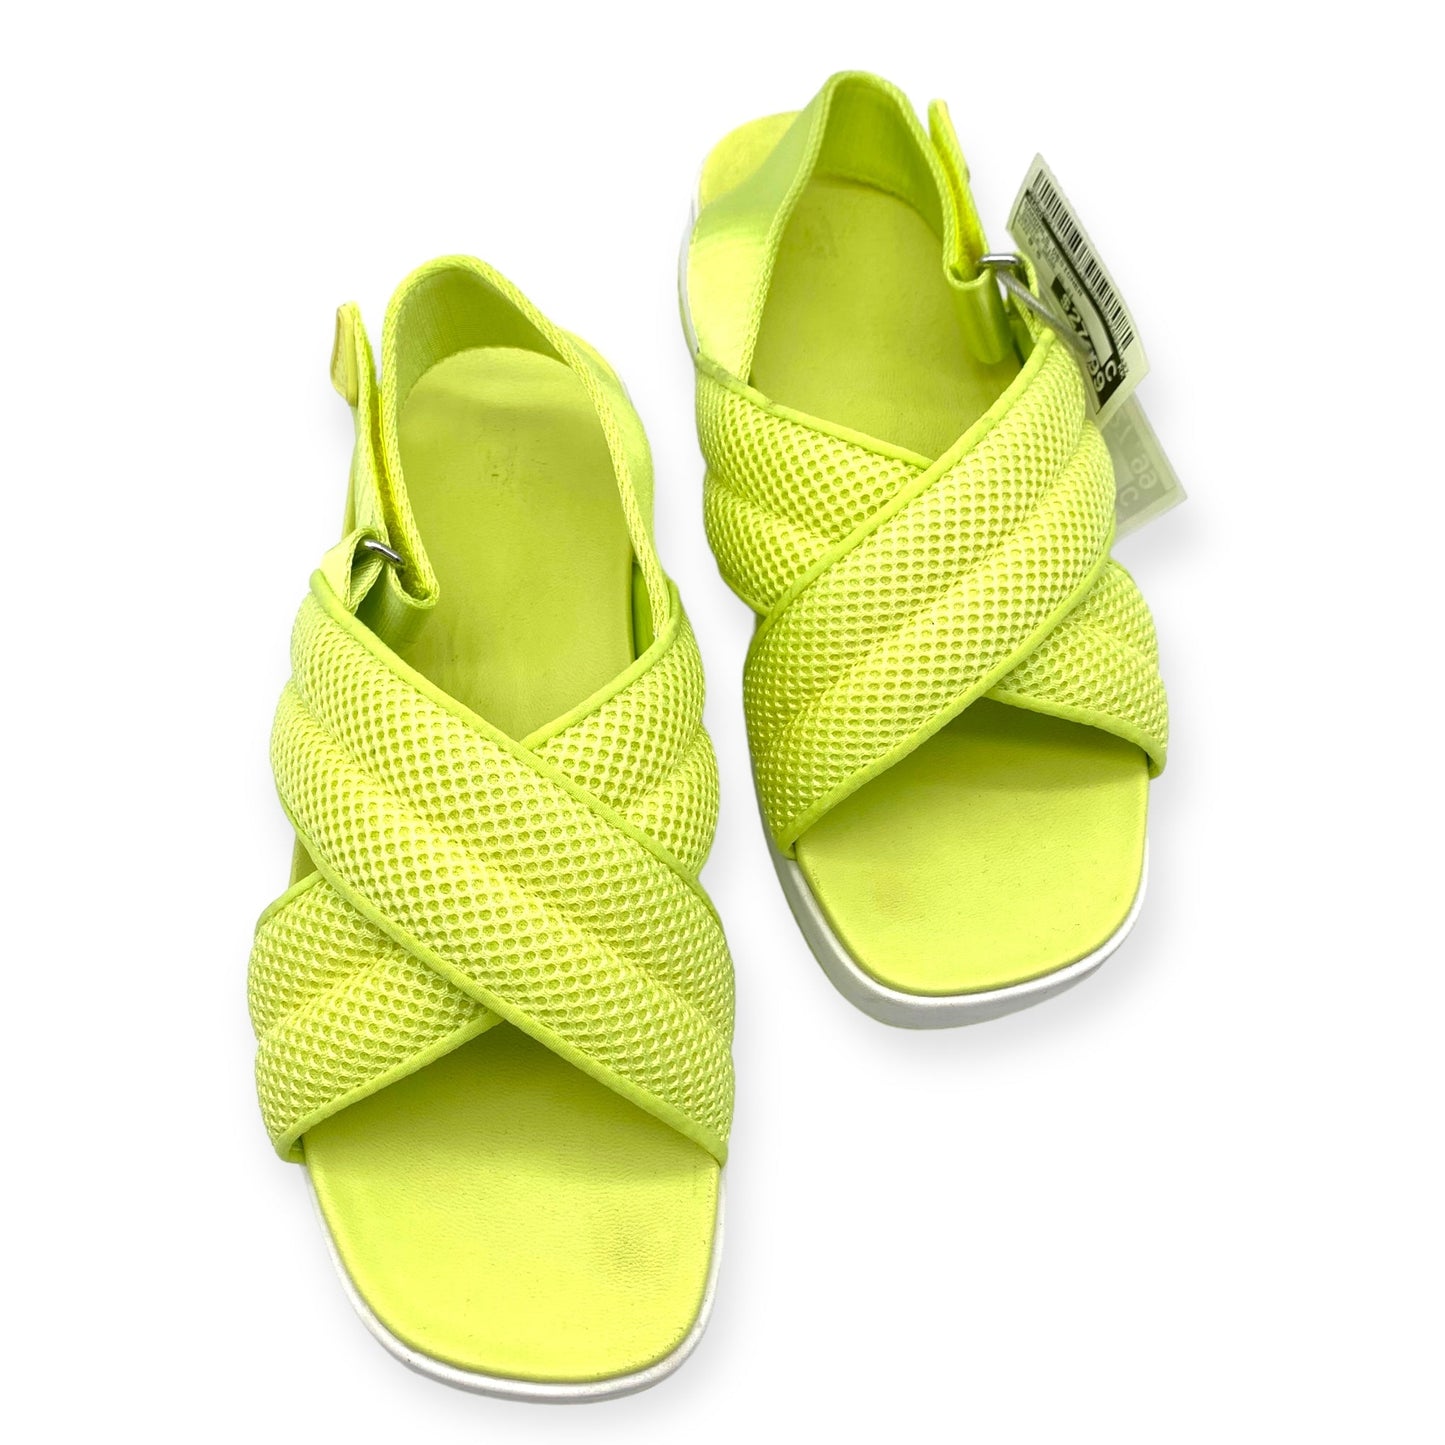 Sandals Designer By Ugg  Size: 9.5